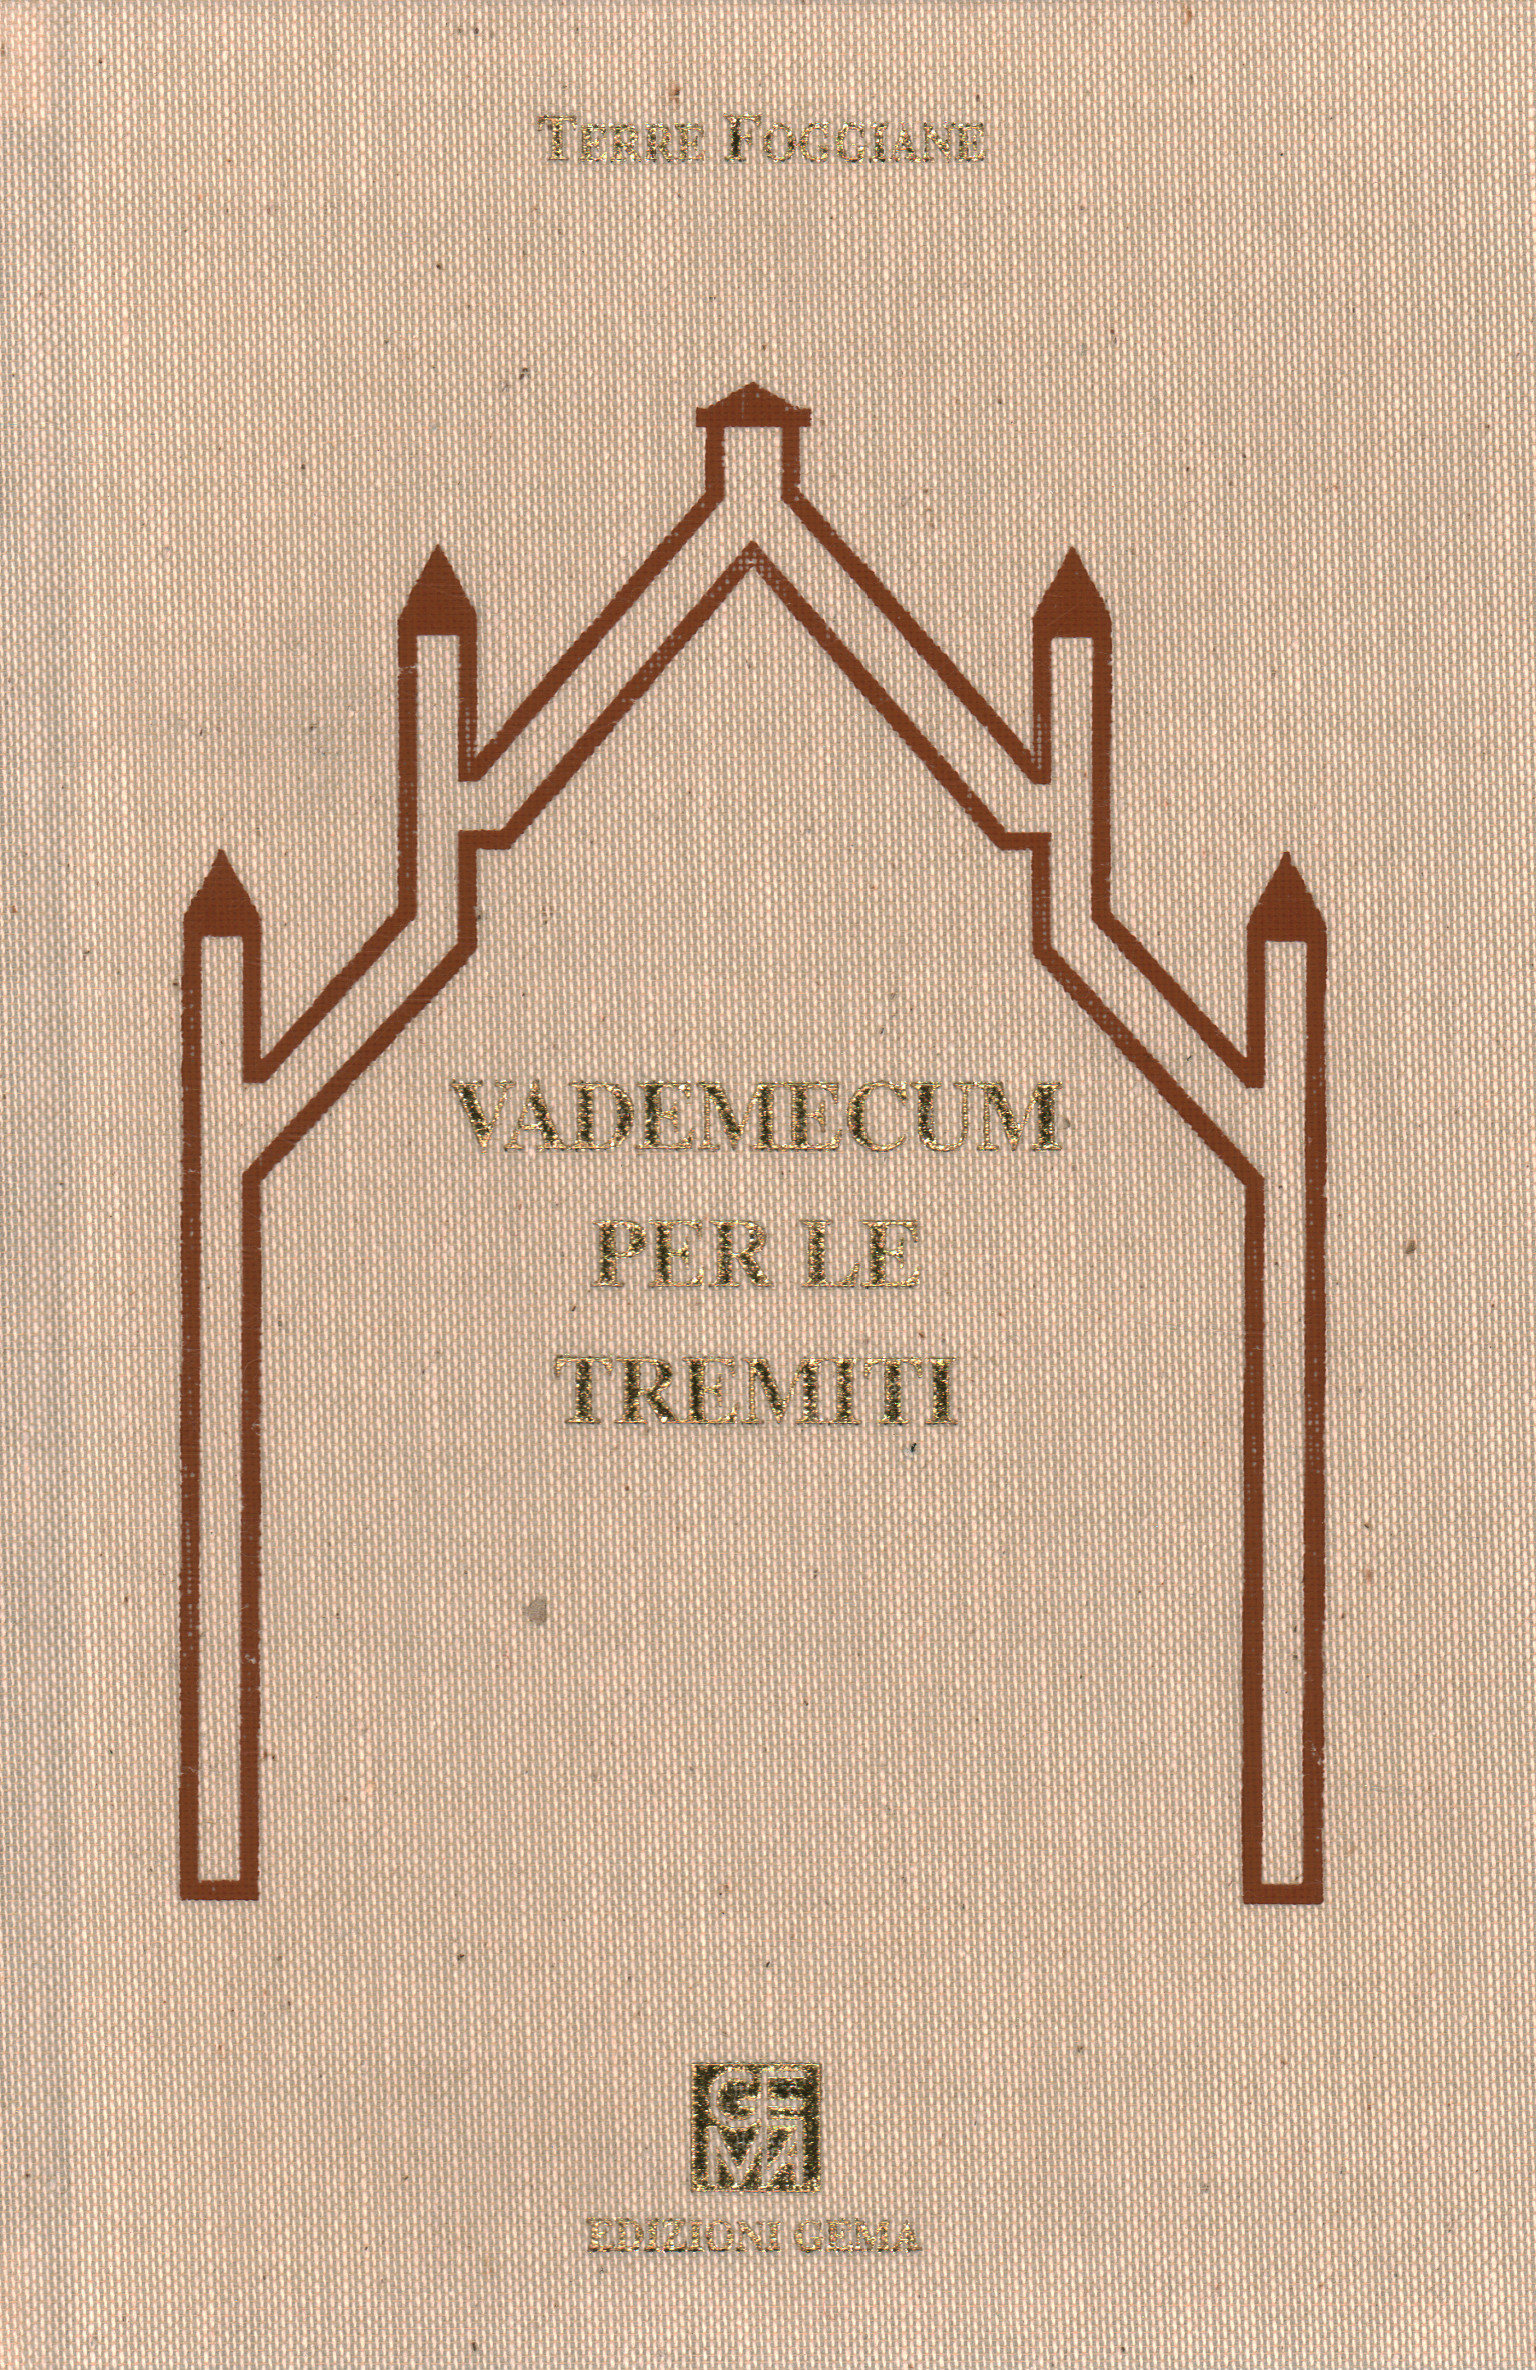 Vademecum für die Tremiti, Lanfranco Tavasci Marco Squarcini